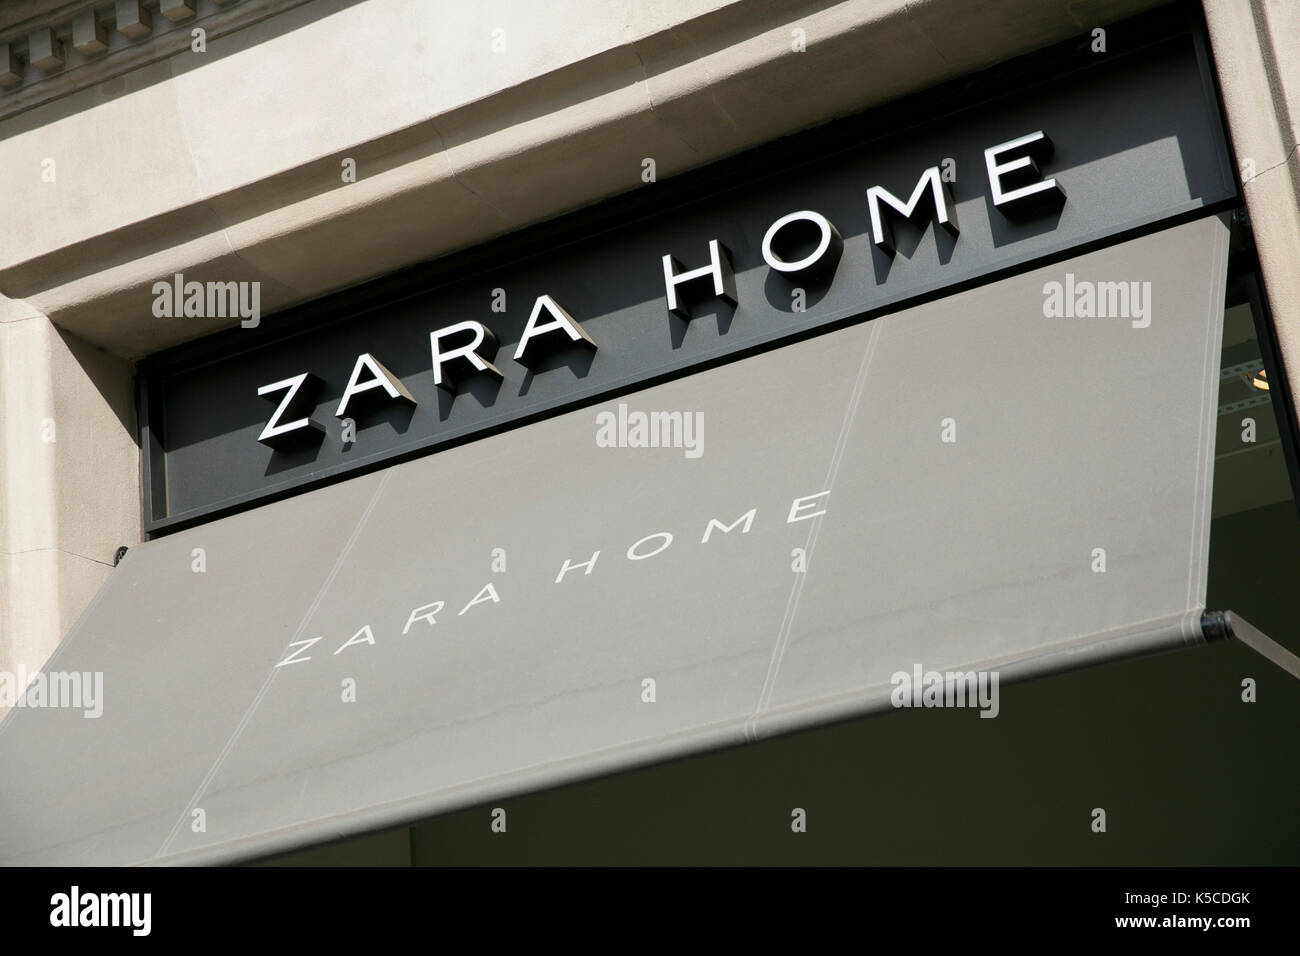 Zara logo immagini e fotografie stock ad alta risoluzione - Alamy